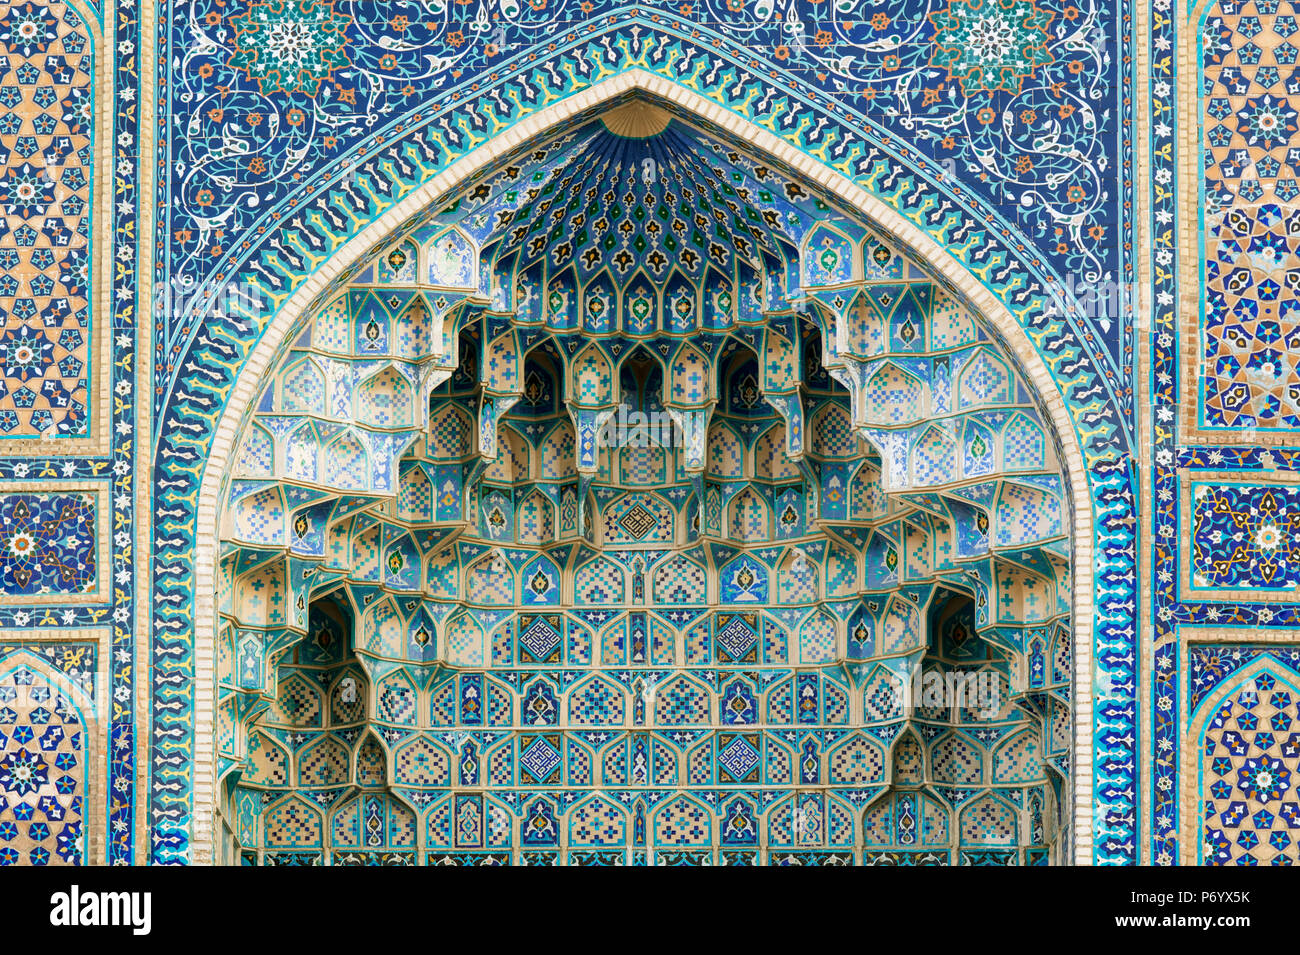 Gur-e Amir Mausoleum der Asiatischen Eroberer Tamerlan (auch bekannt als Tamerlane, 1336-1405). Es hat einen sehr wichtigen Platz in der Geschichte der Persian-Mongolian Architektur. Ein UNESCO-Weltkulturerbe, Samarkand. Usbekistan Stockfoto